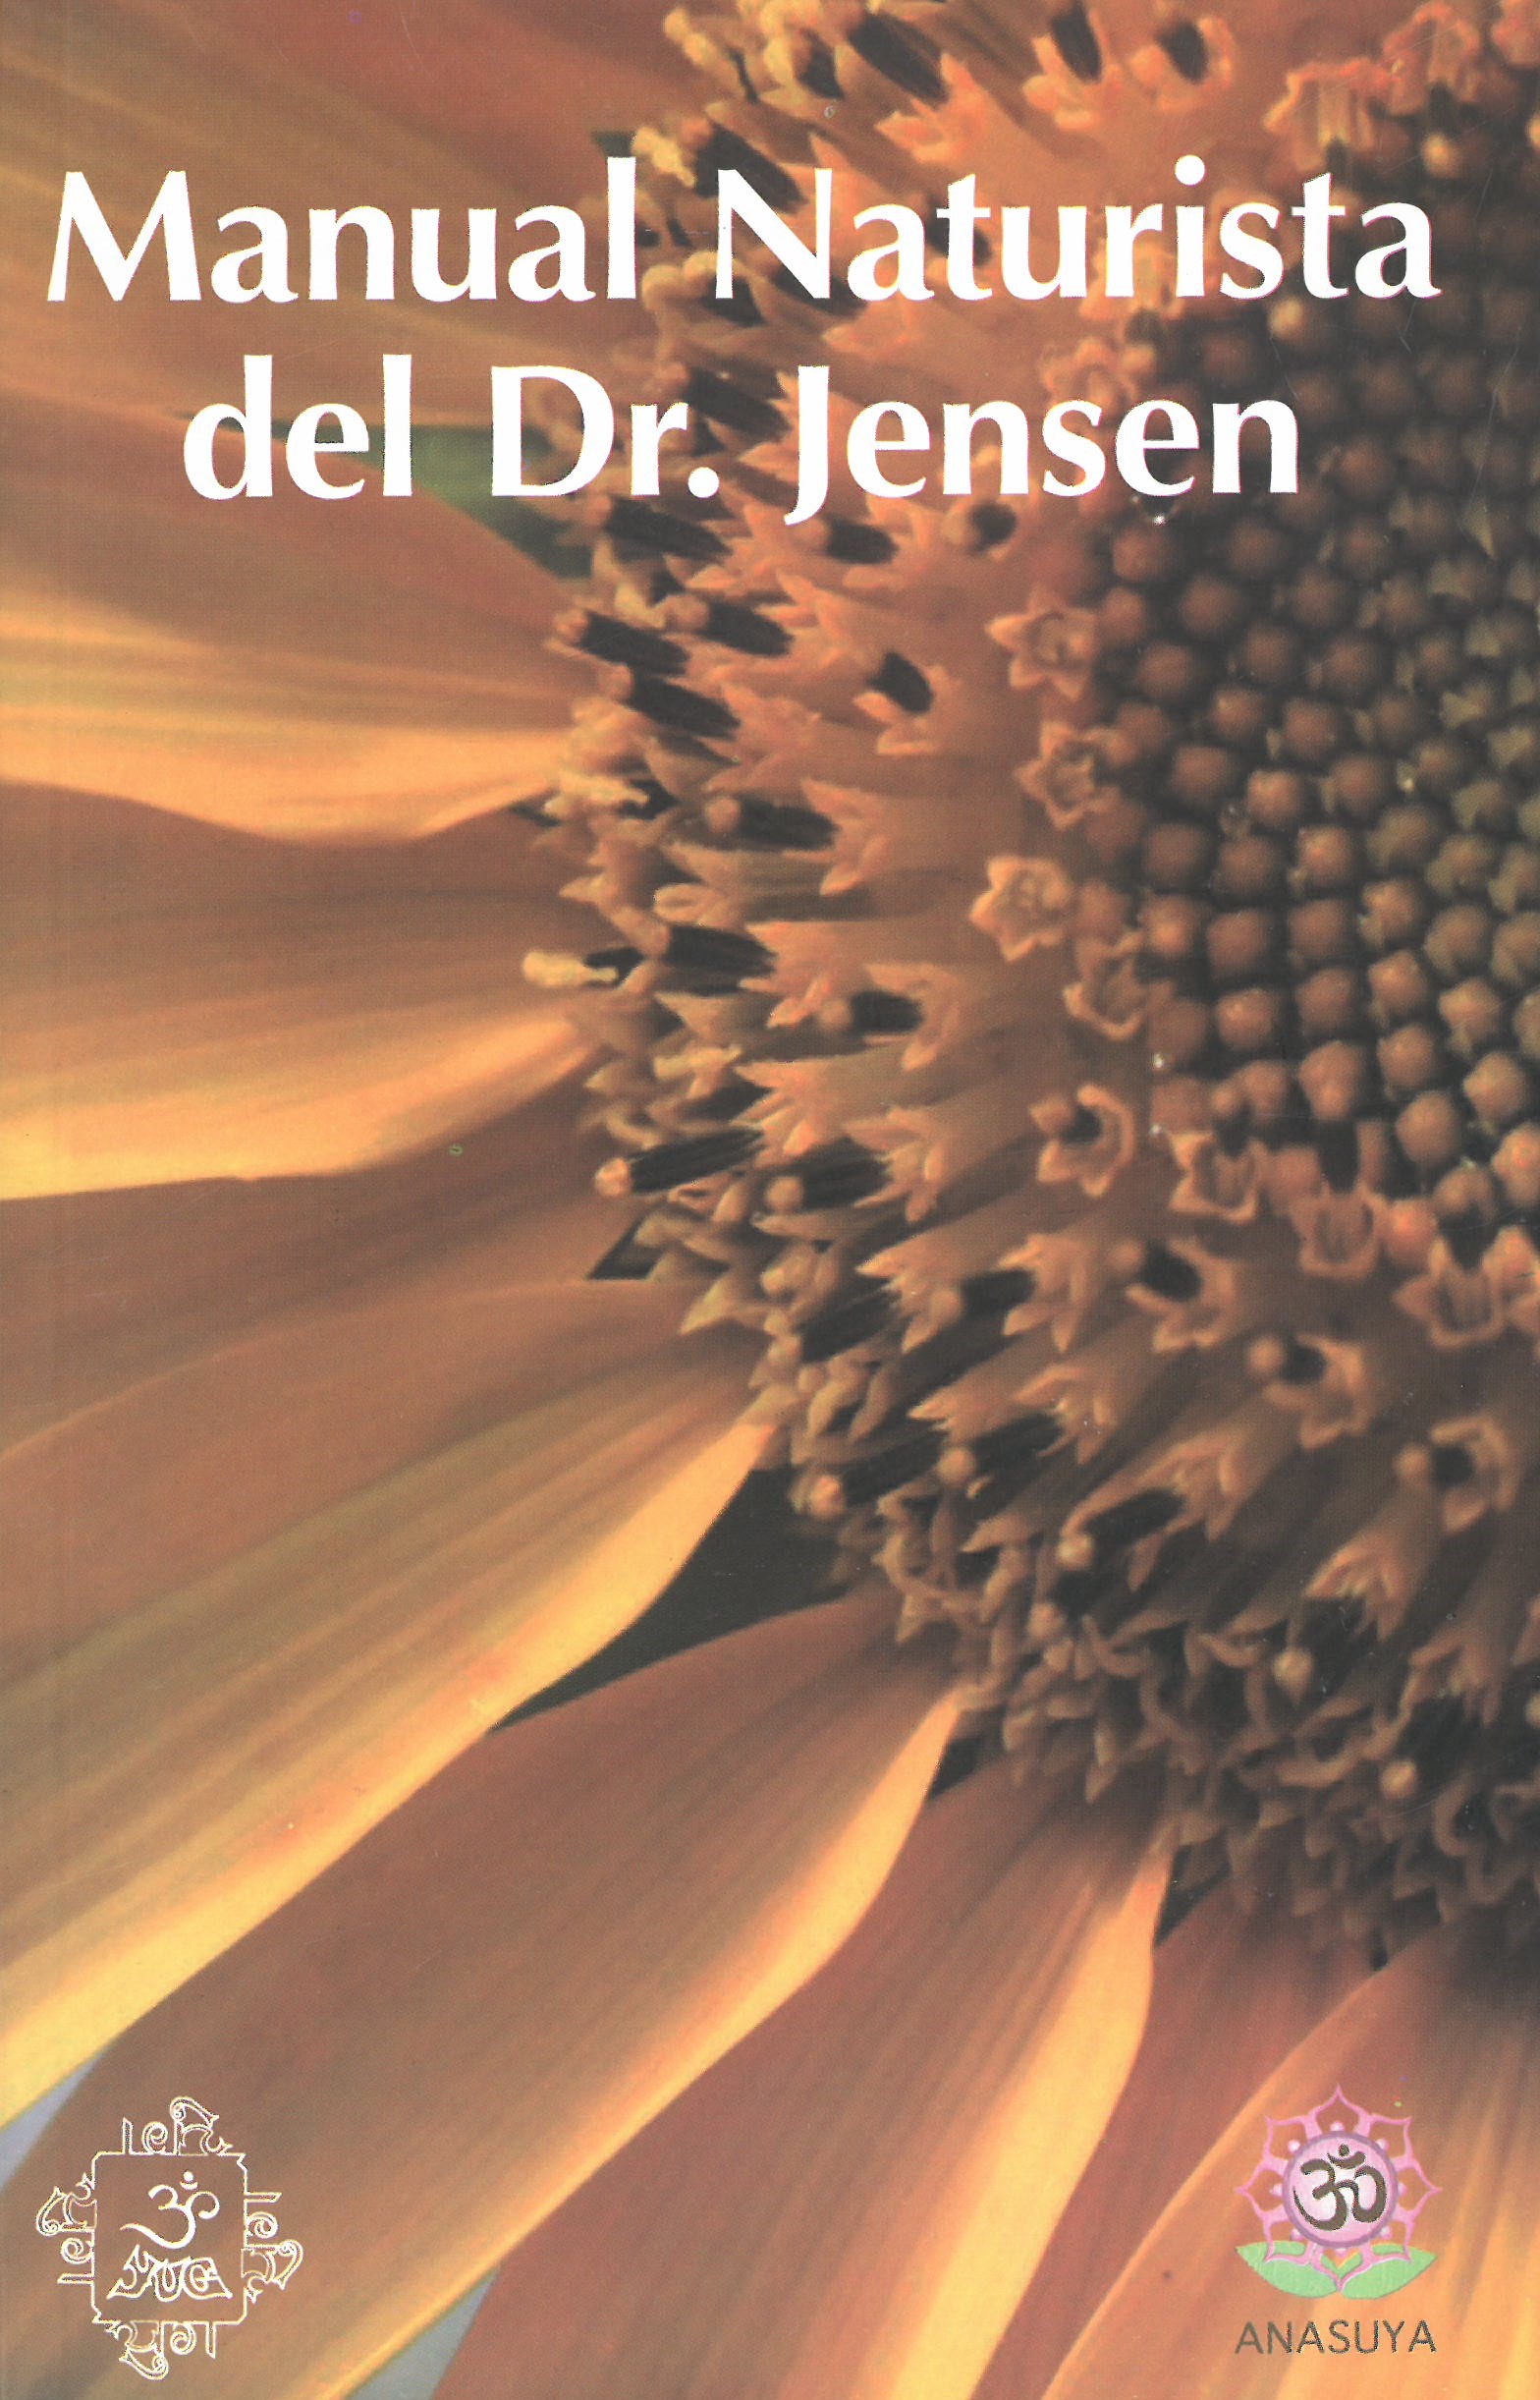 Manual naturista del dr. Jensen 